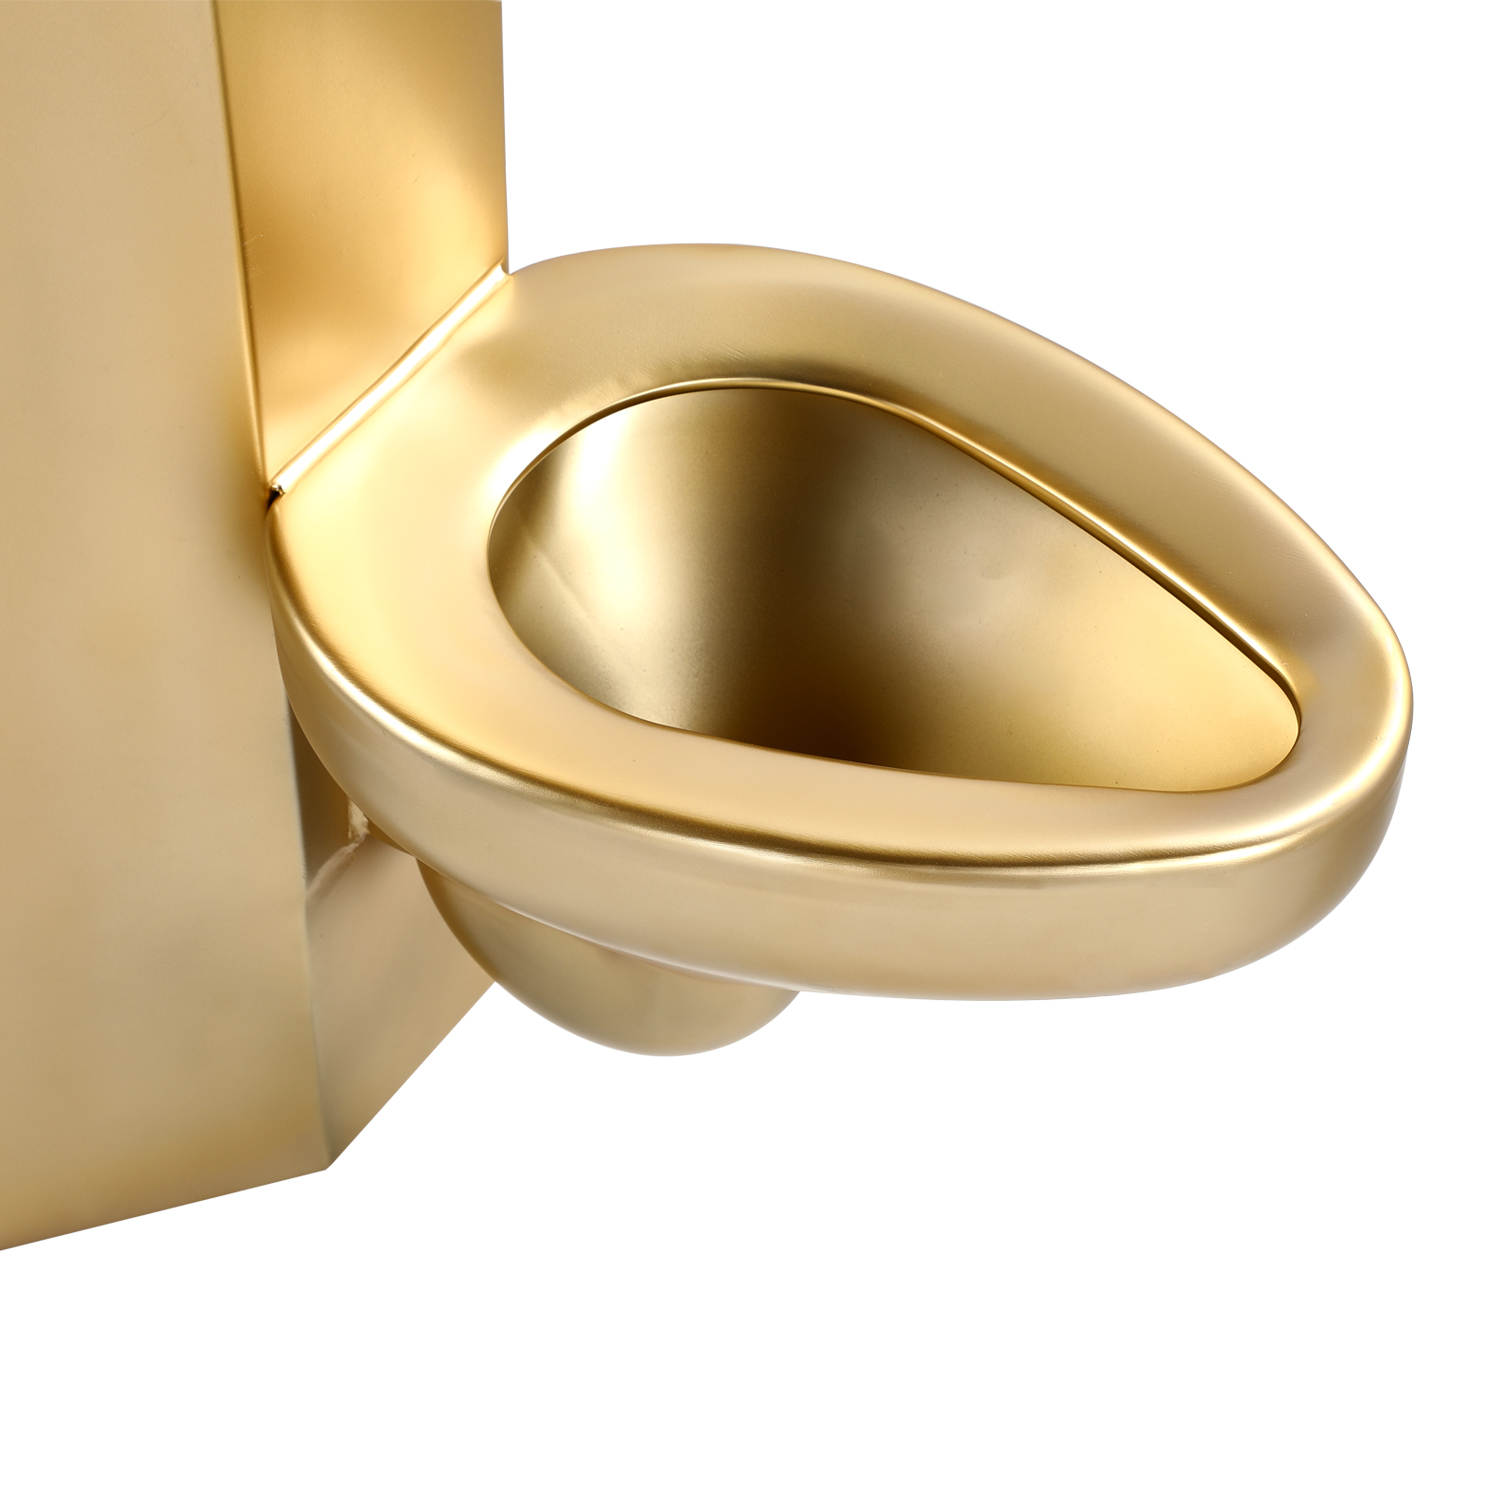 Kombinationstoilette aus goldenem Edelstahl